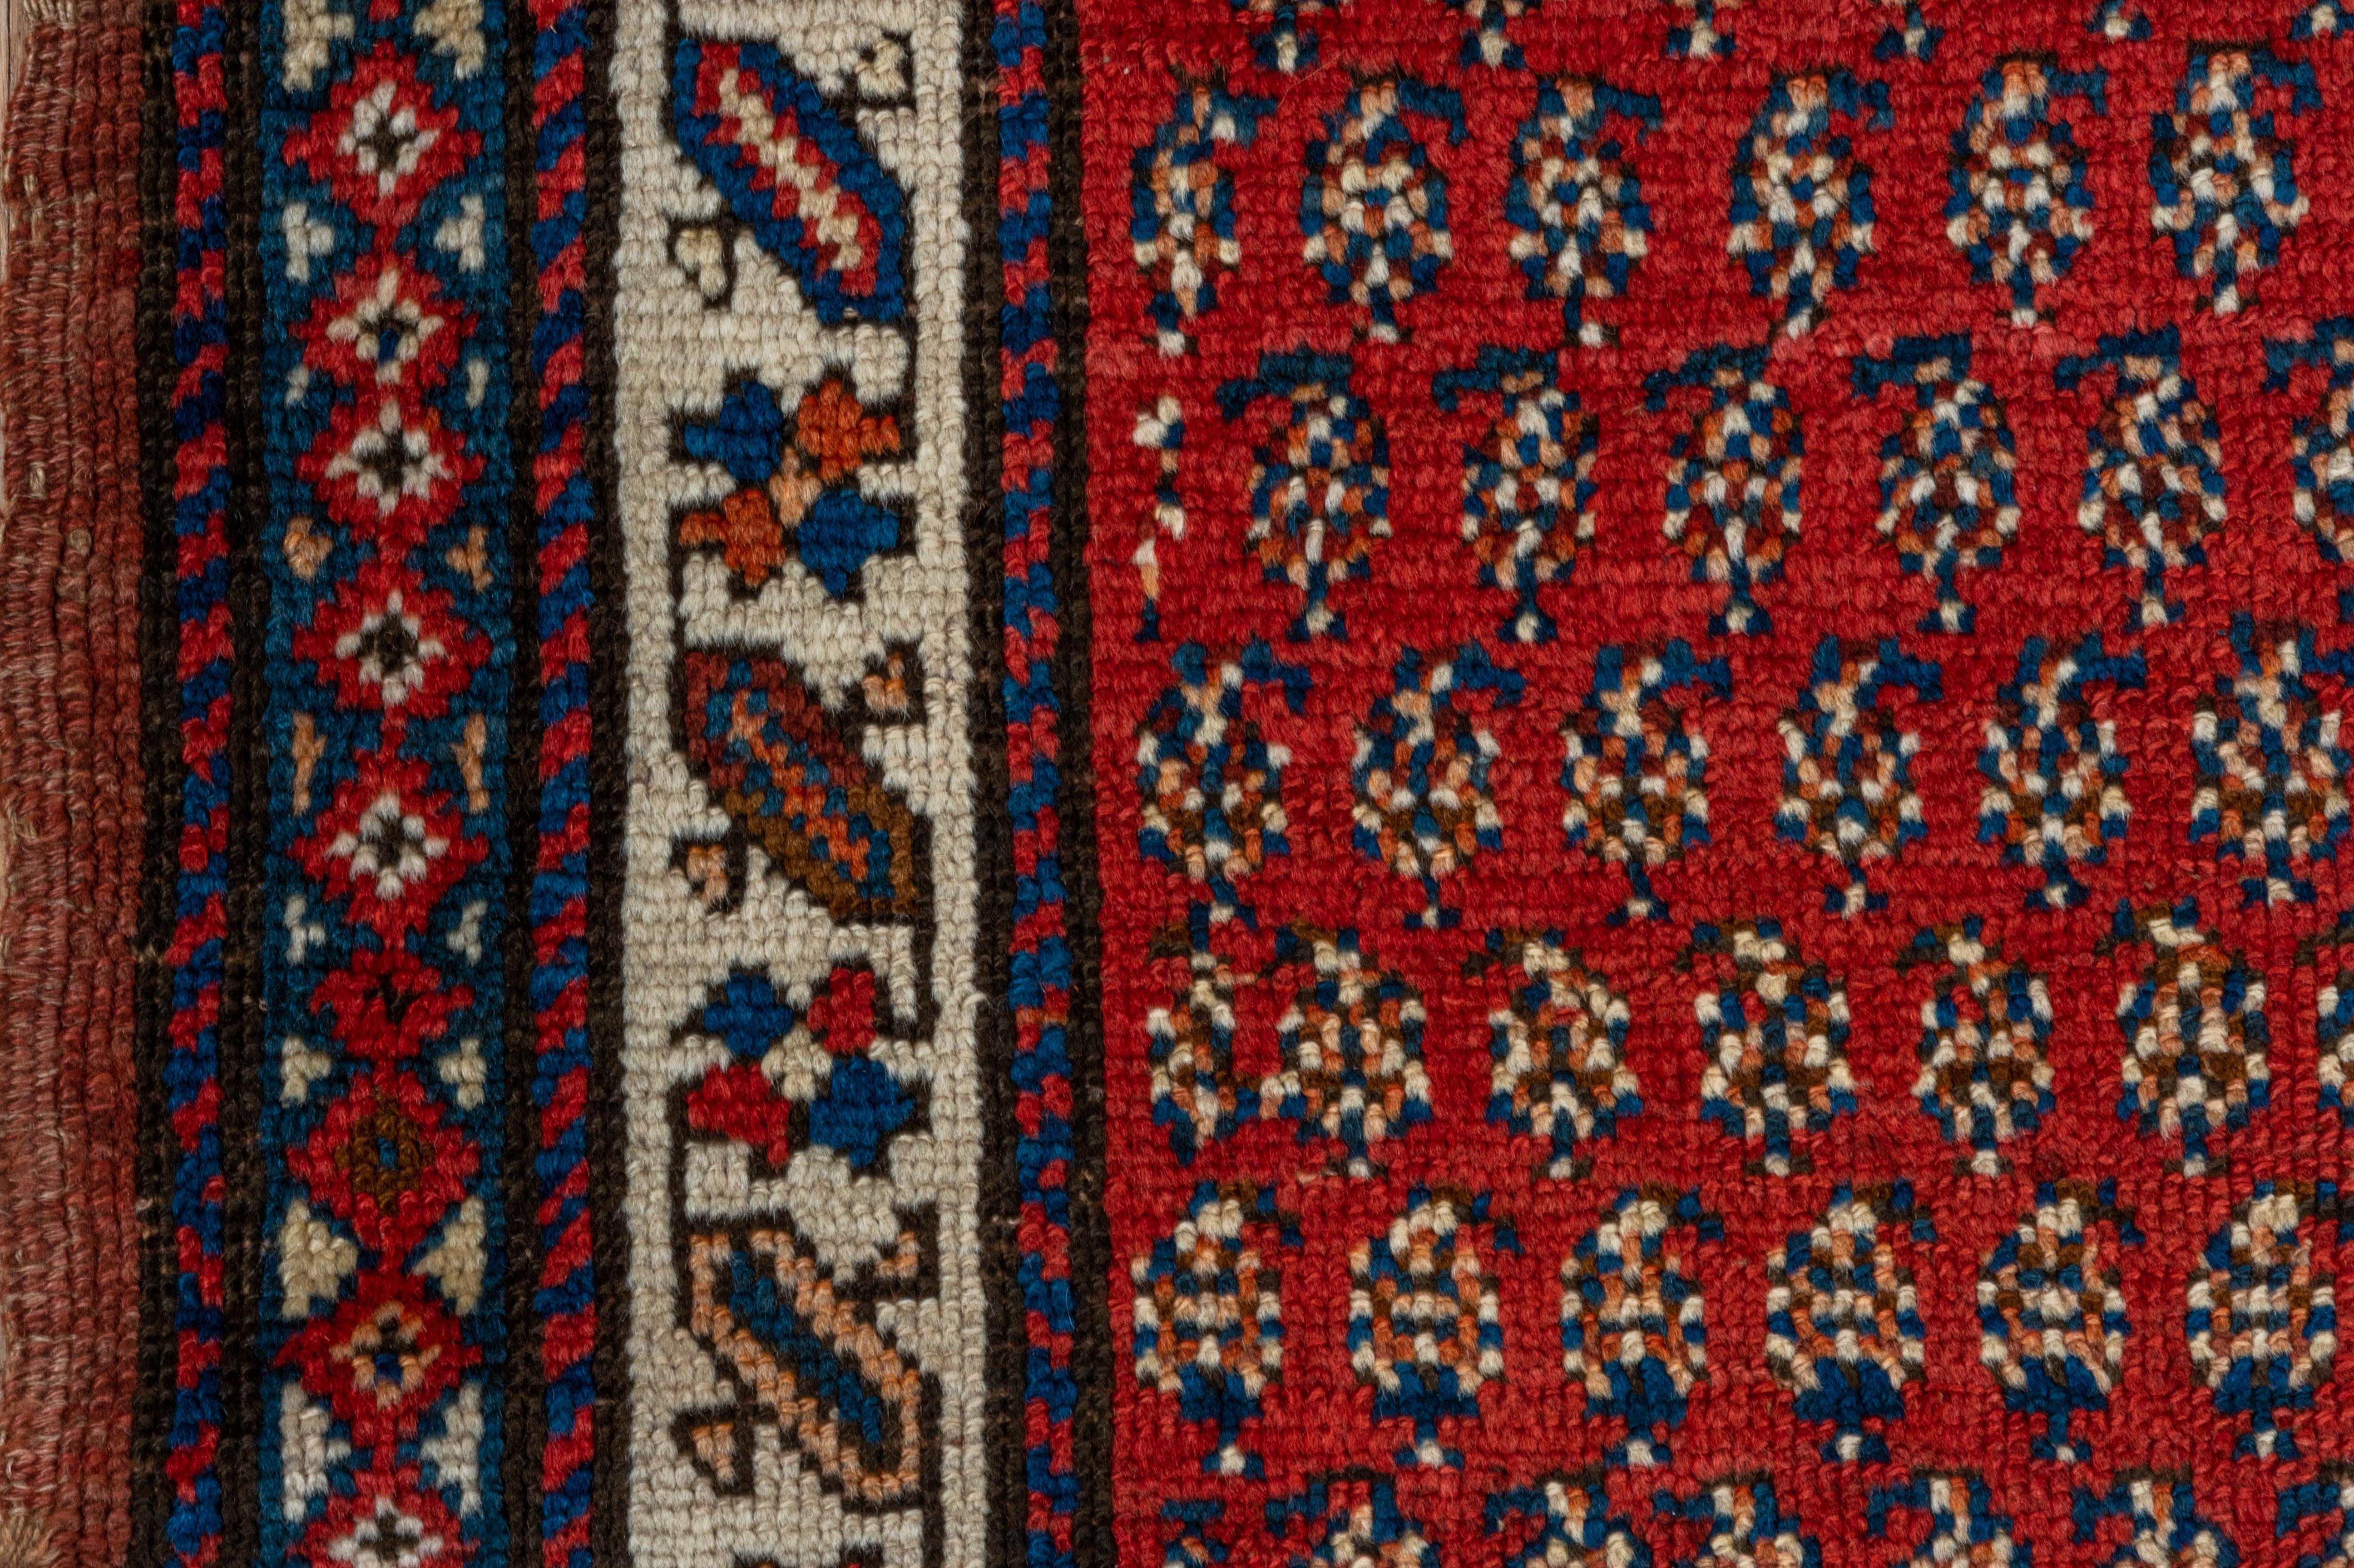 Le champ rouge saturé de ce tapis persan du Nord-Ouest contient des rangées décalées de minuscules botehs fleuris. L'étroite bordure crème présente des hachures et des barres inclinées, reliées par un méandre géométrique. Détails crème, bleus et